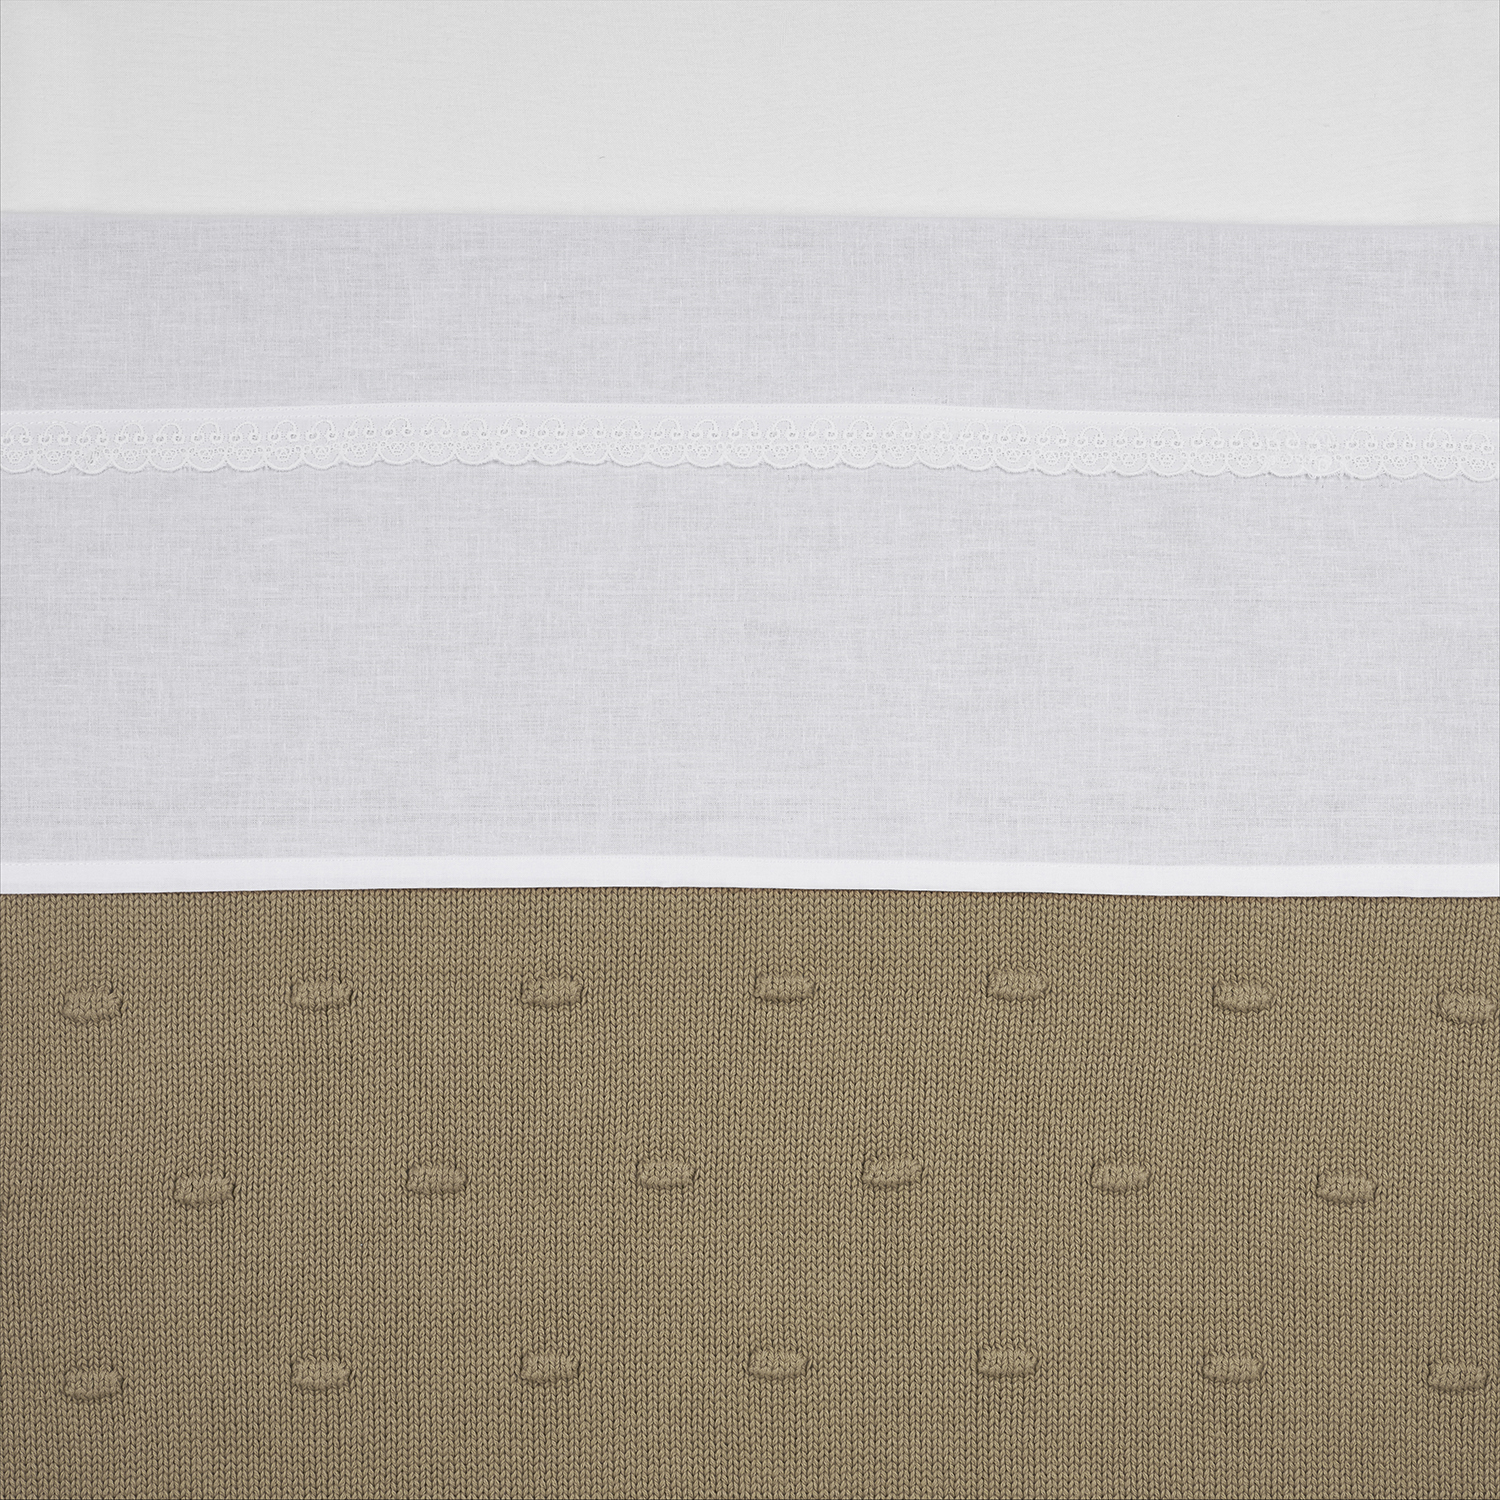 Crib Sheet Lace - White - 75x100cm